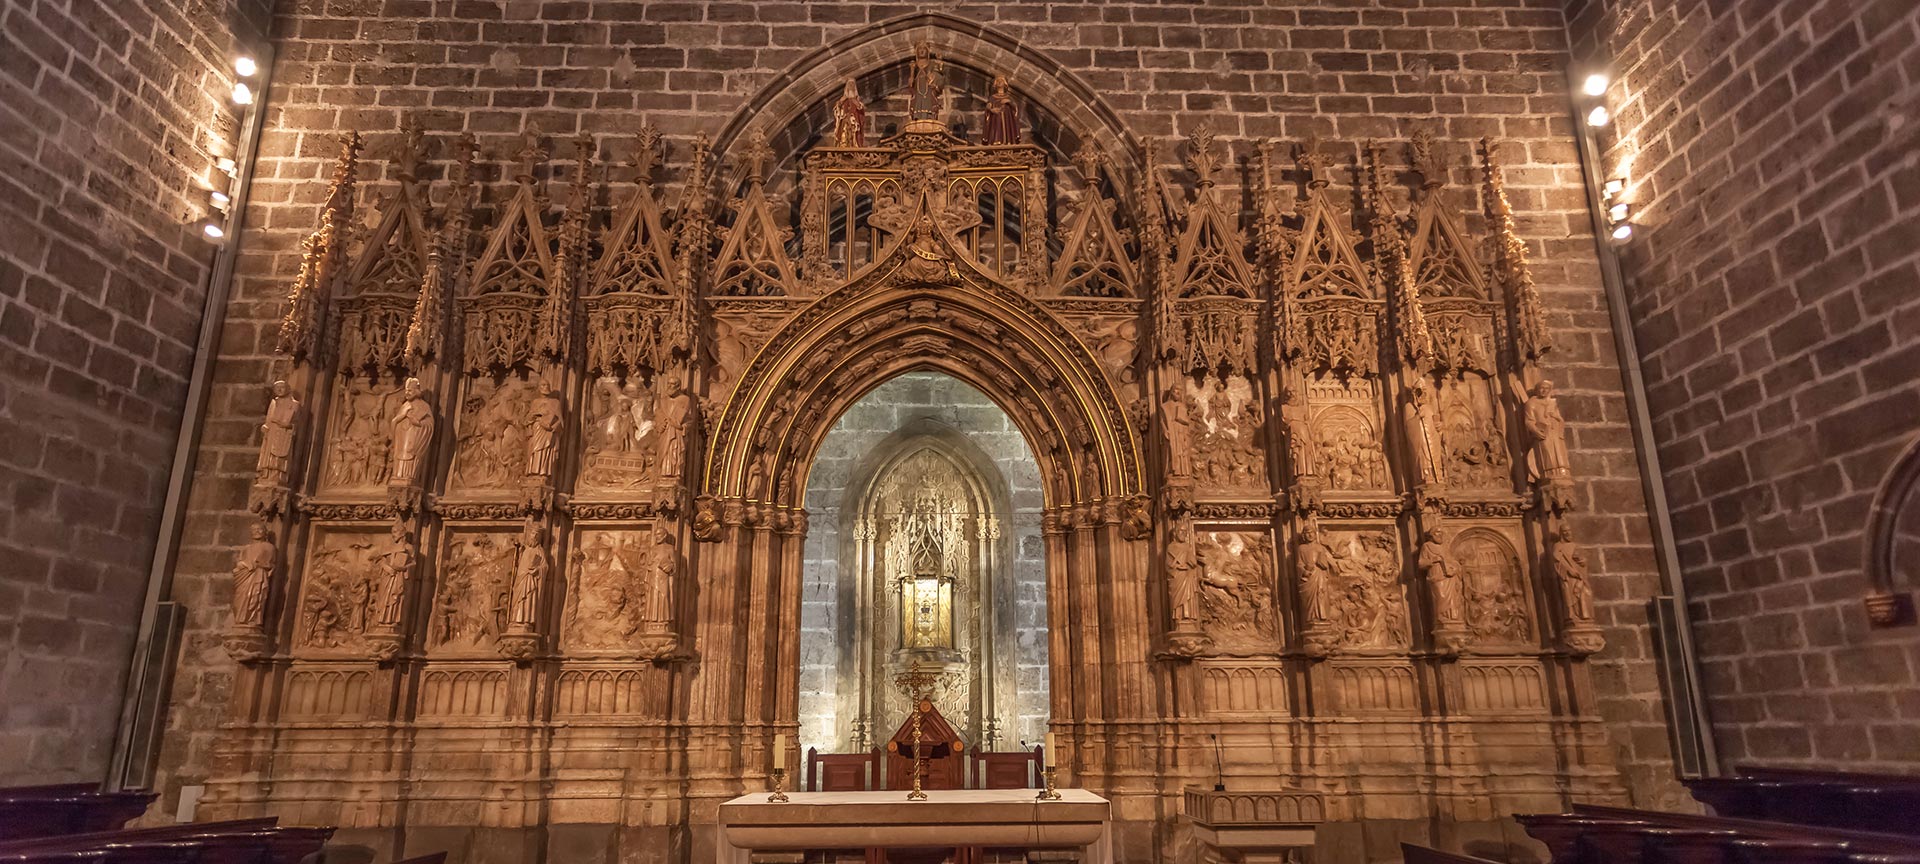 Componer pala embudo Catedral de Valencia. Monumento estilo gótico. Información | spain.info